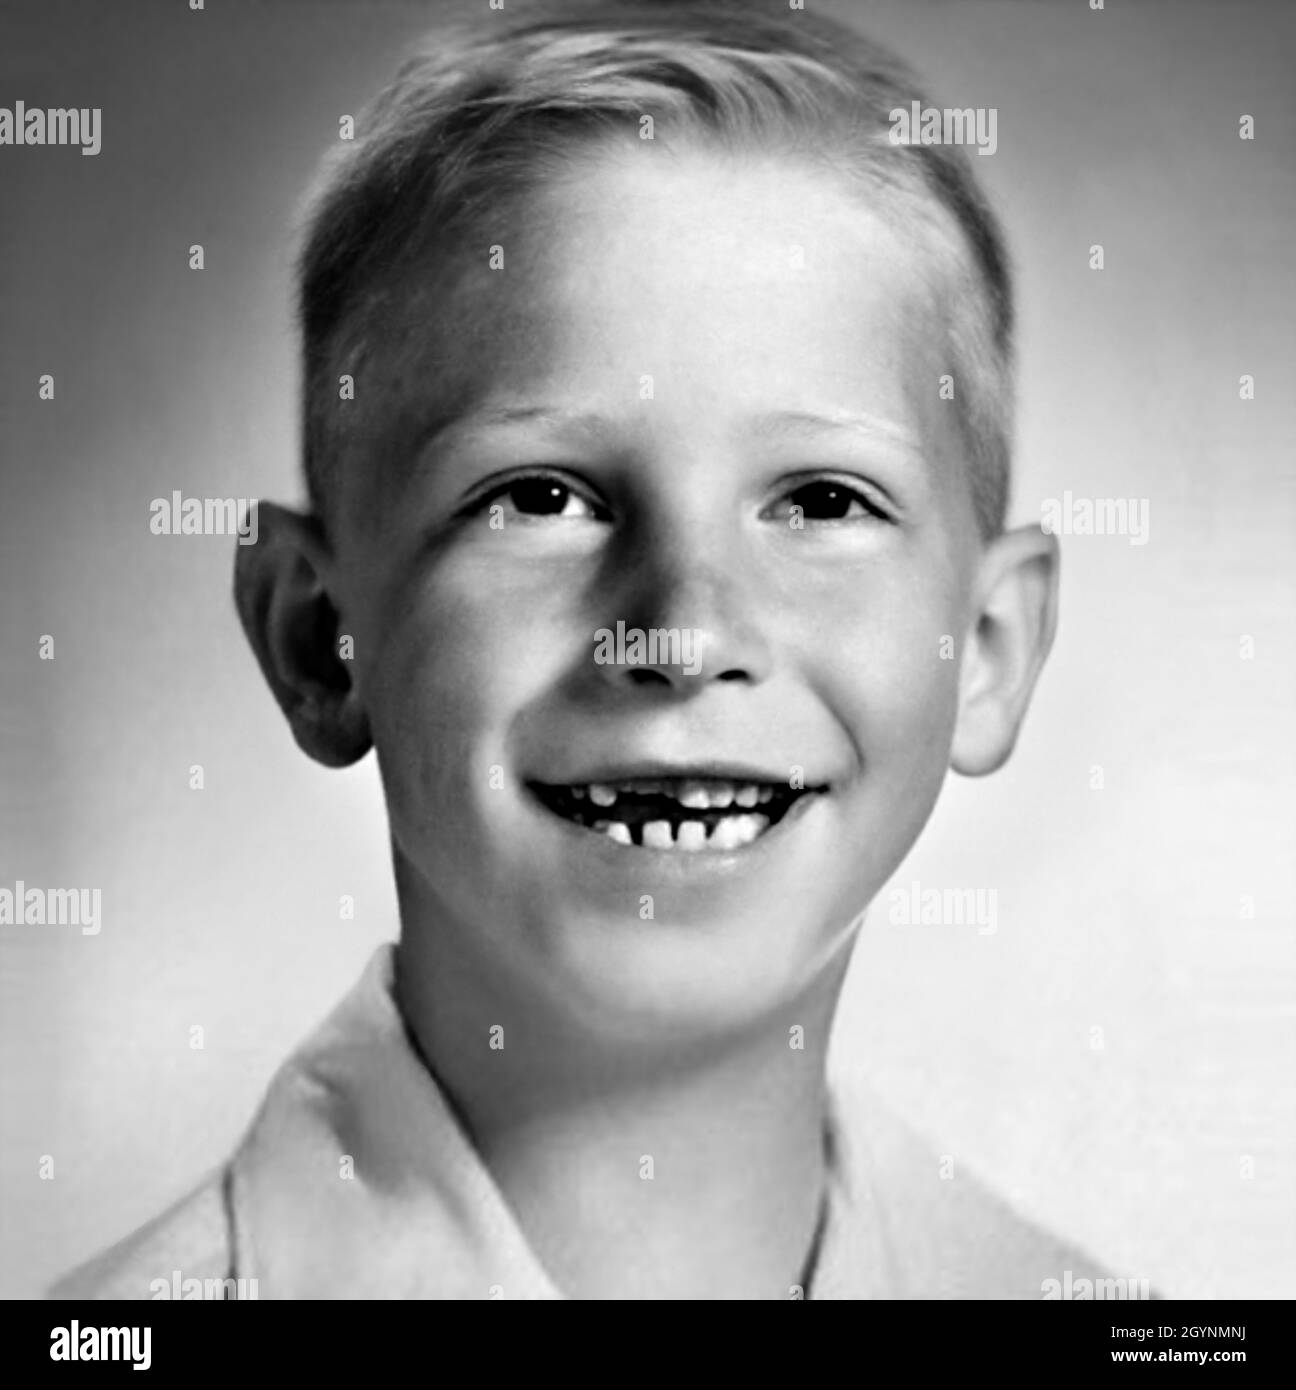 1962 CA, Etats-Unis : le célèbre BILL GATES ( bo?rn à Seattle, 28 octobre 1955? )quand était un jeune garçon de 7 ans.Photographe inconnu .Magnat américain , investisseur et propriétaire de médias fondateur de WINDOWS MICROSOFT Company .Photographe inconnu .- INFORMATICA - INFORMATICO - INFORMATIQUE - INFORMATIQUE - INVENTORE - INVENTEUR - HISTOIRE - FOTO STORICHE - TYCOON - personalità da bambino bambini da giovane - personnalité personnalités quand était jeune - INFANZIA - ENFANCE - BAMBINO - BAMBINI - ENFANTS - ENFANT --- ARCHIVIO GBB Banque D'Images